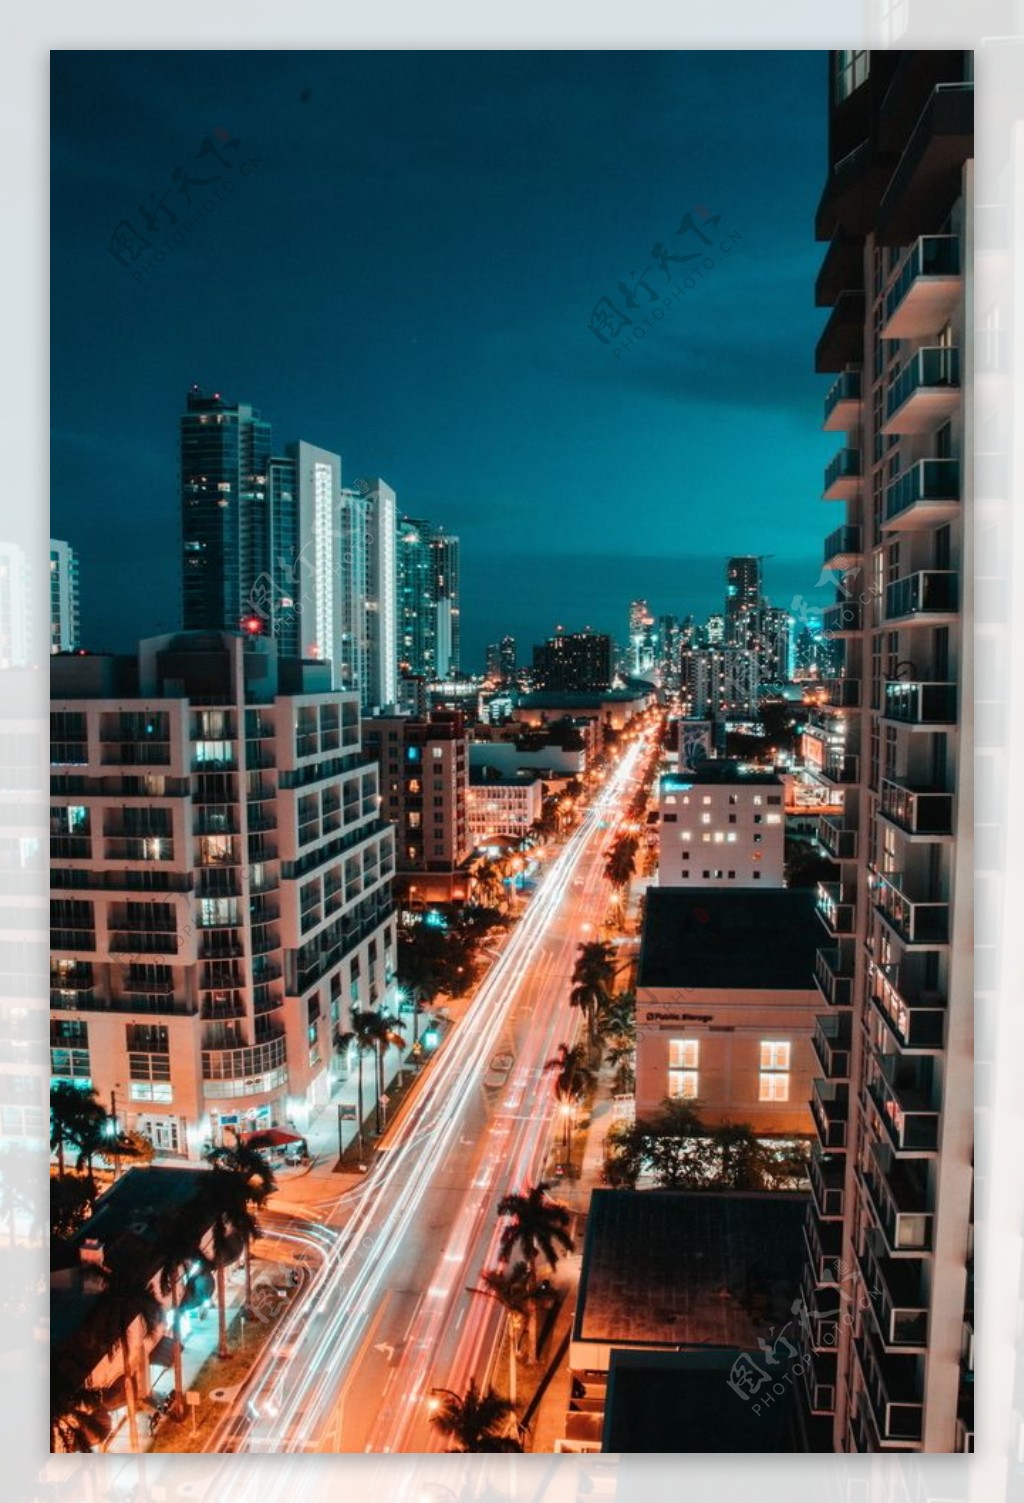 繁华城市夜晚街景图片.jpg